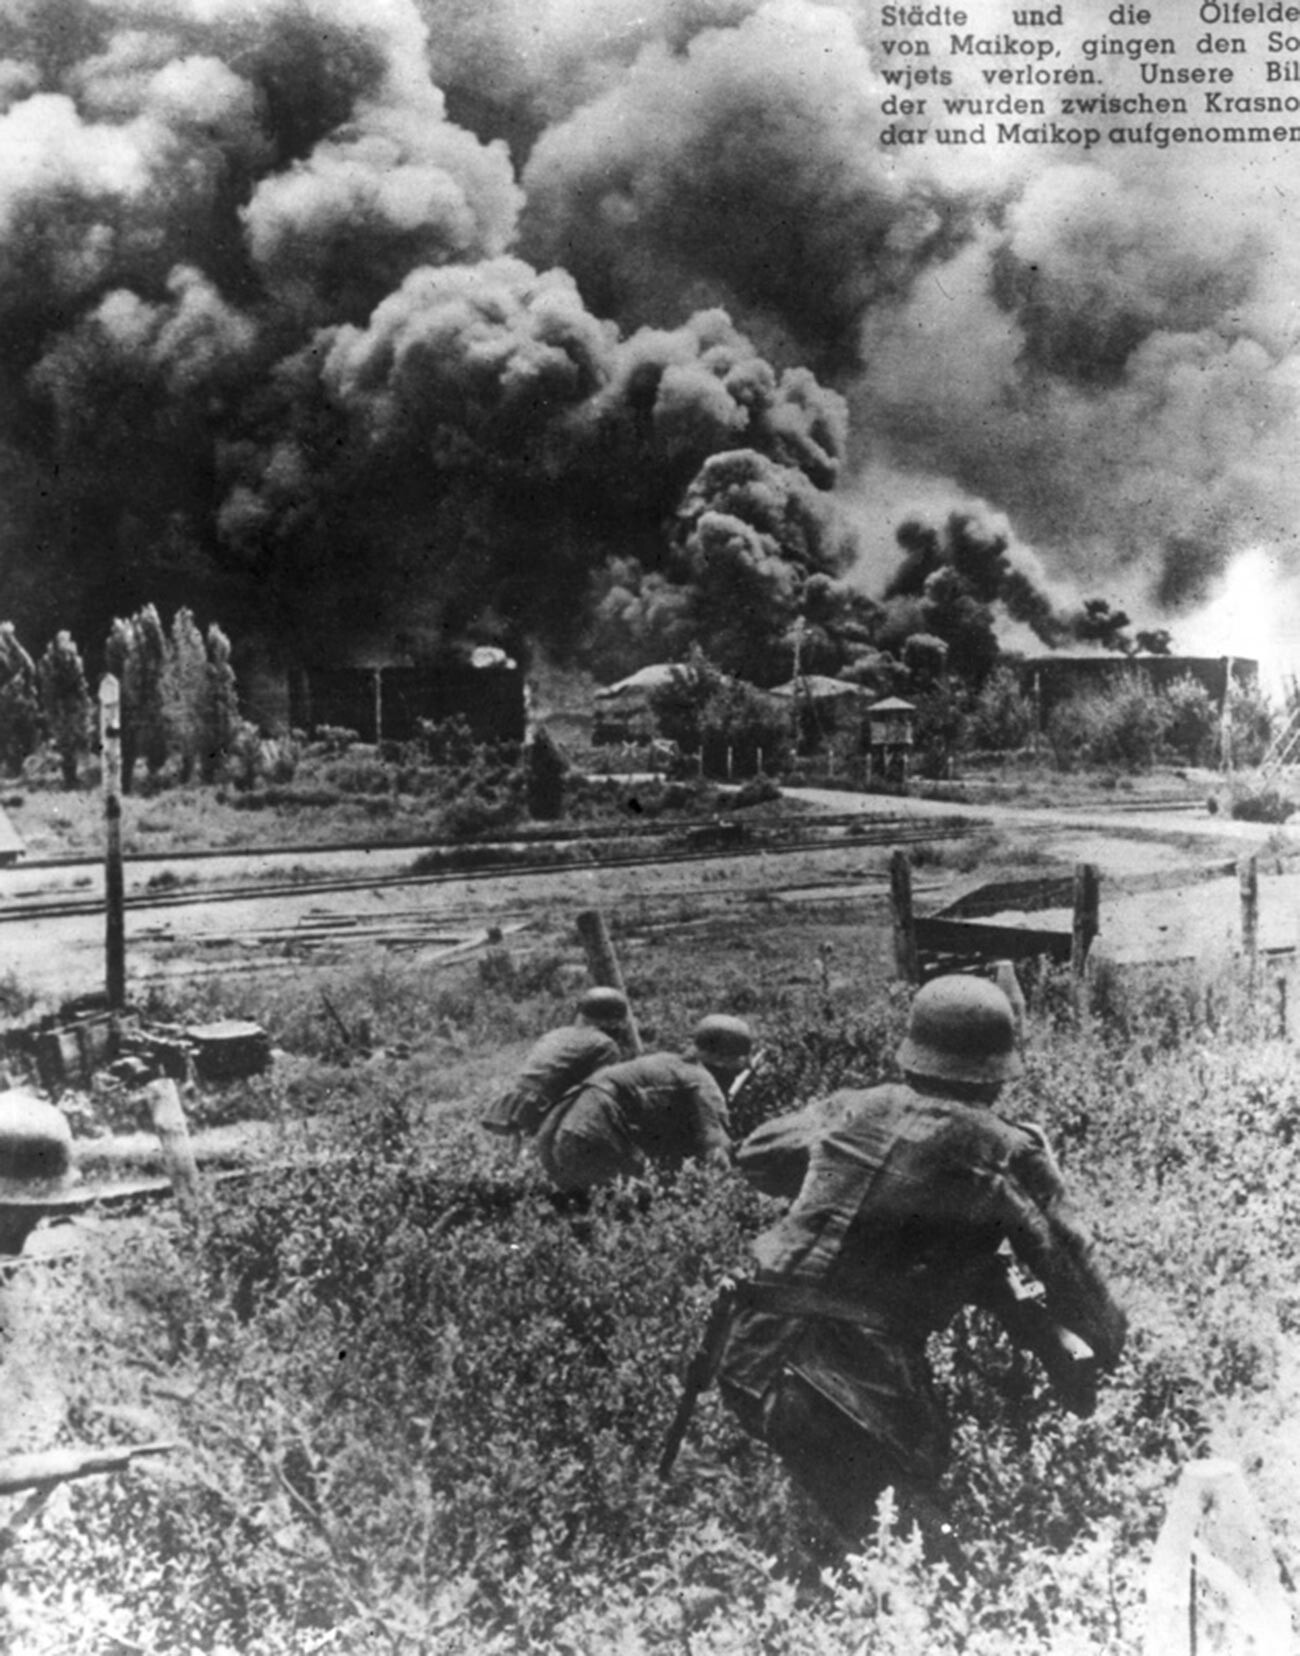 Des soldats allemands s'approchent d'un dépôt de pétrole en feu près de la ville de Maïkop.